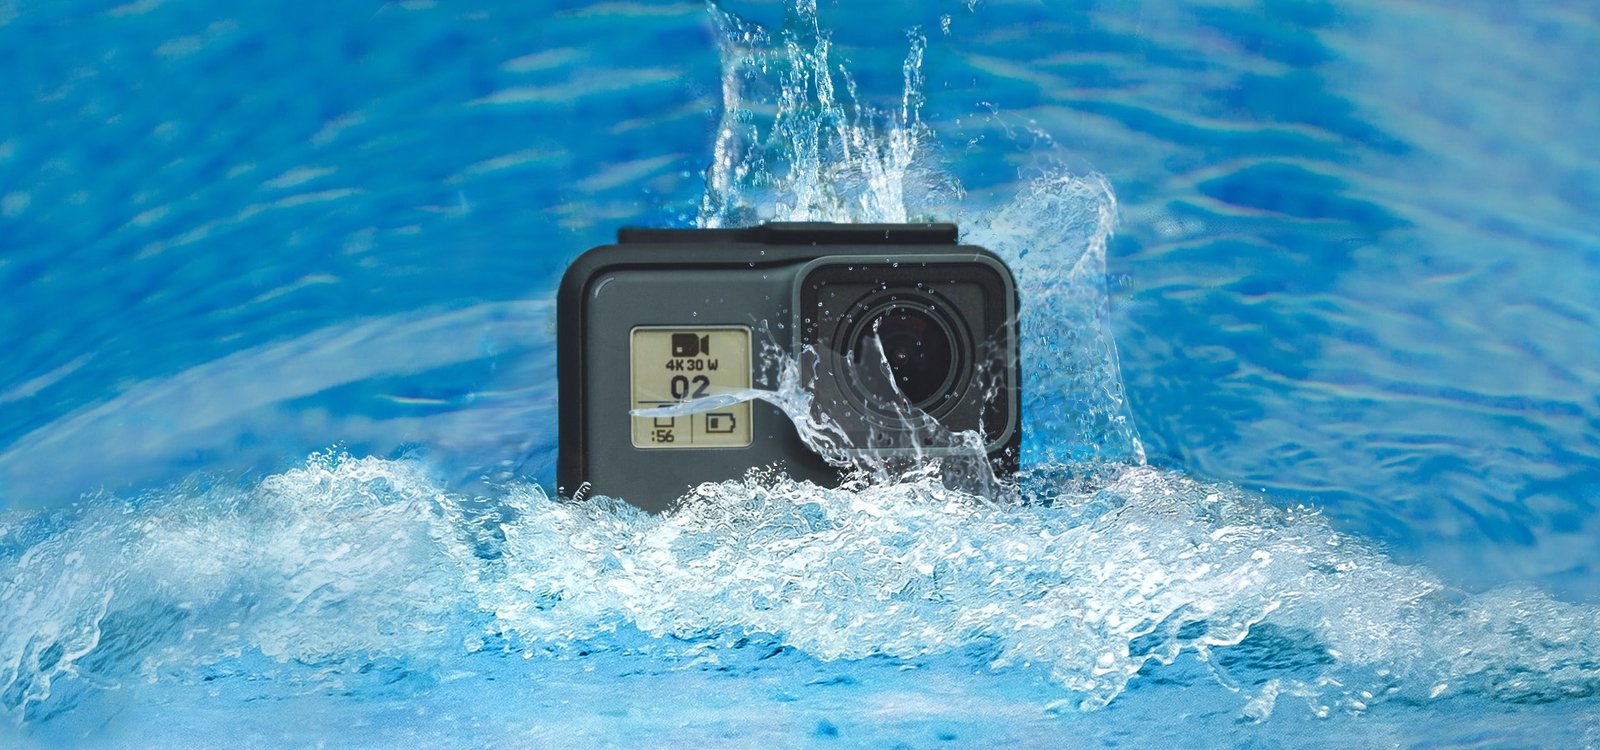 Camera in pool